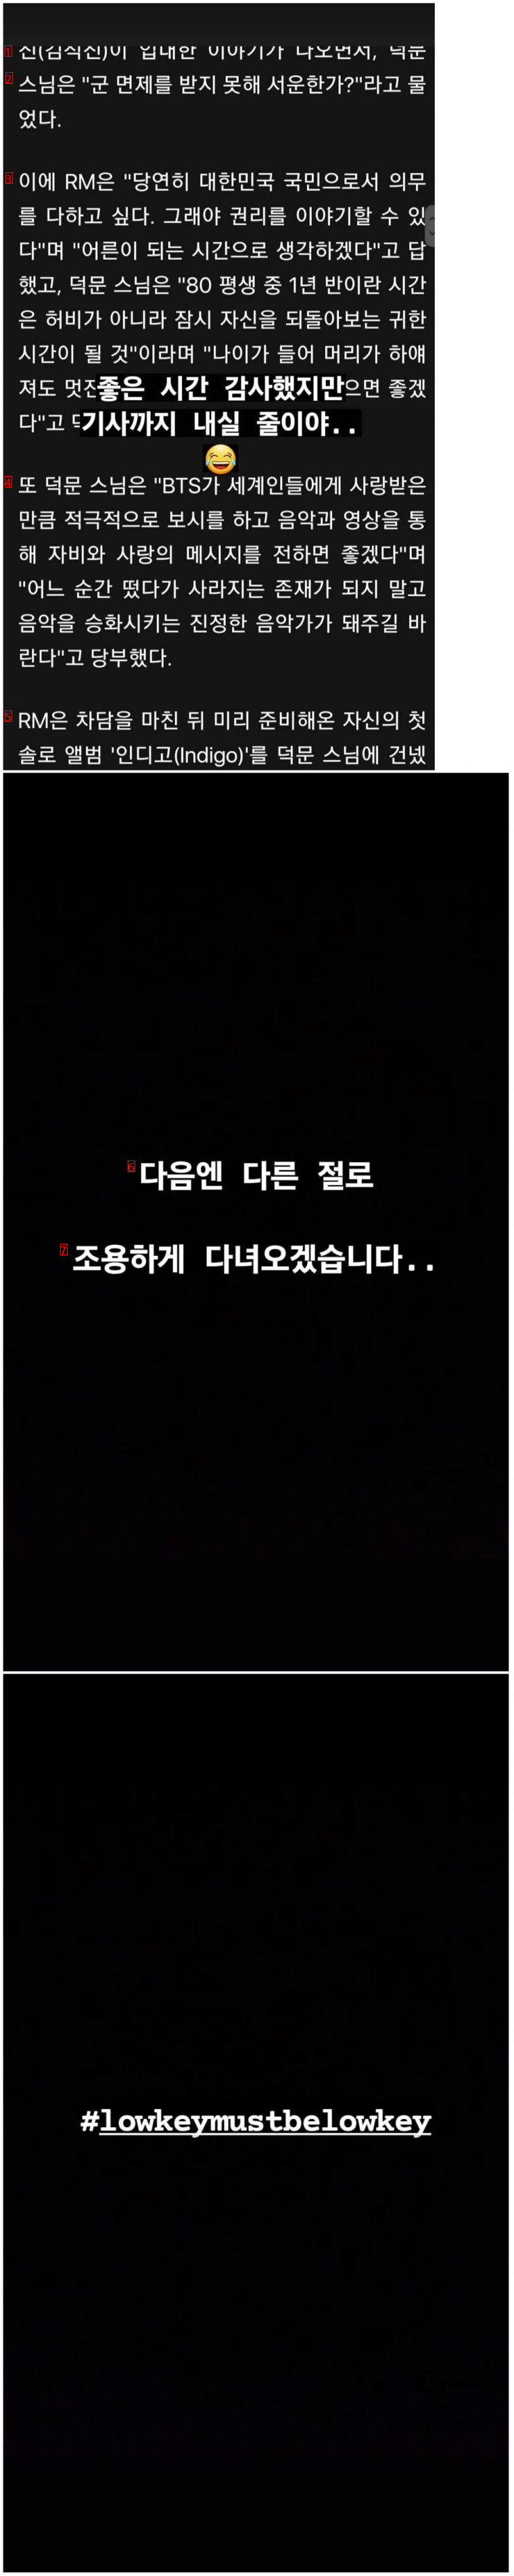 어제자 BTS 멤버 RM 인스타그램 .jpg